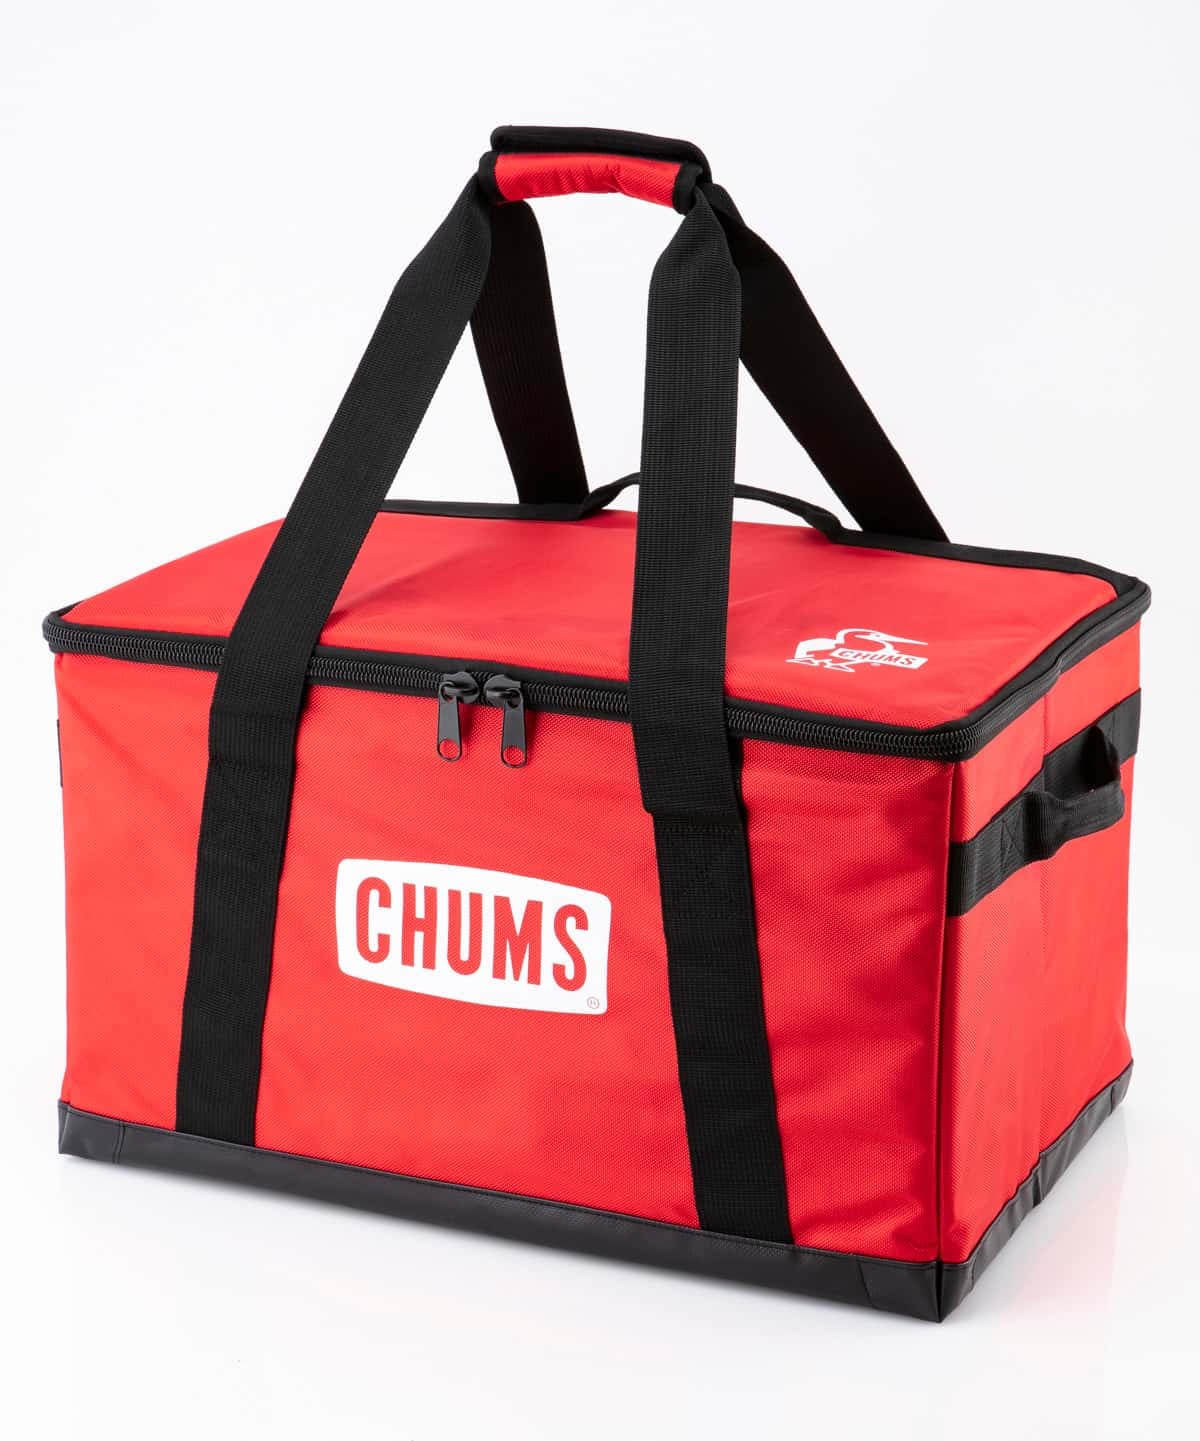 キャンプシーズンに準備しておきたい Chums チャムス のおすすめキャンプアイテム Chums チャムス アウトドアファッション公式通販